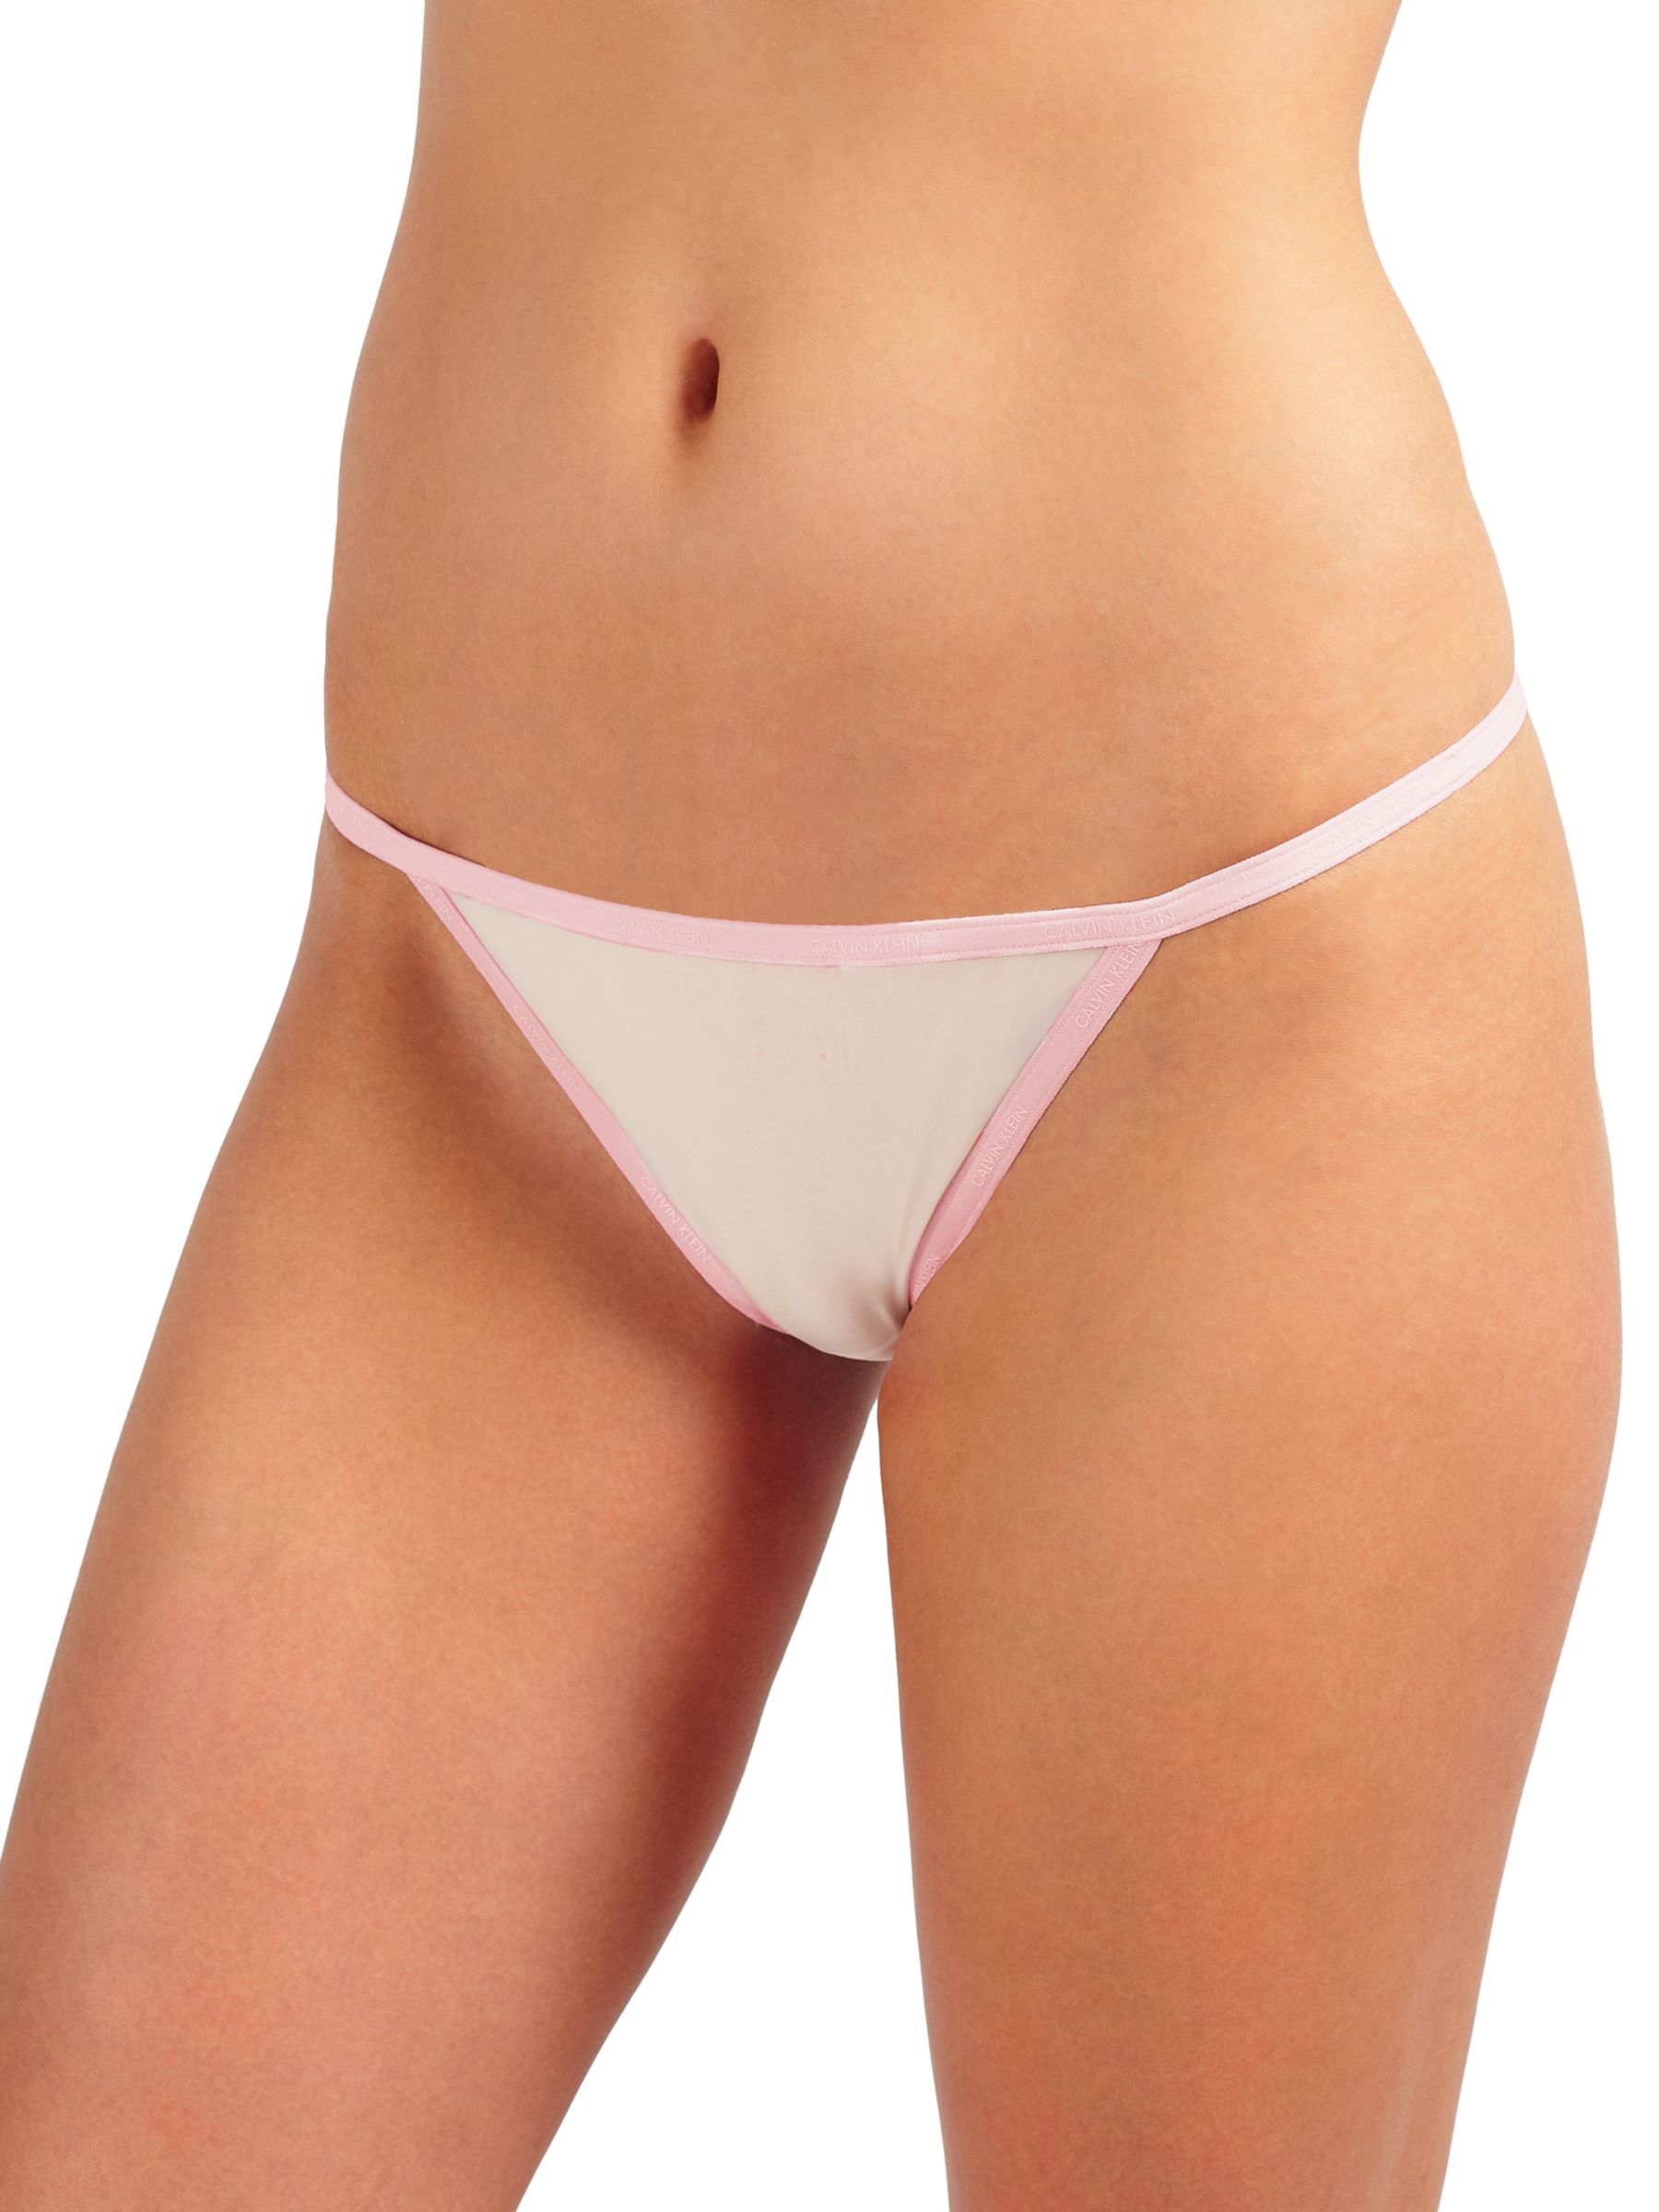 Calvin Klein Underwear LOW RISE - Briefs - white - Zalando.de